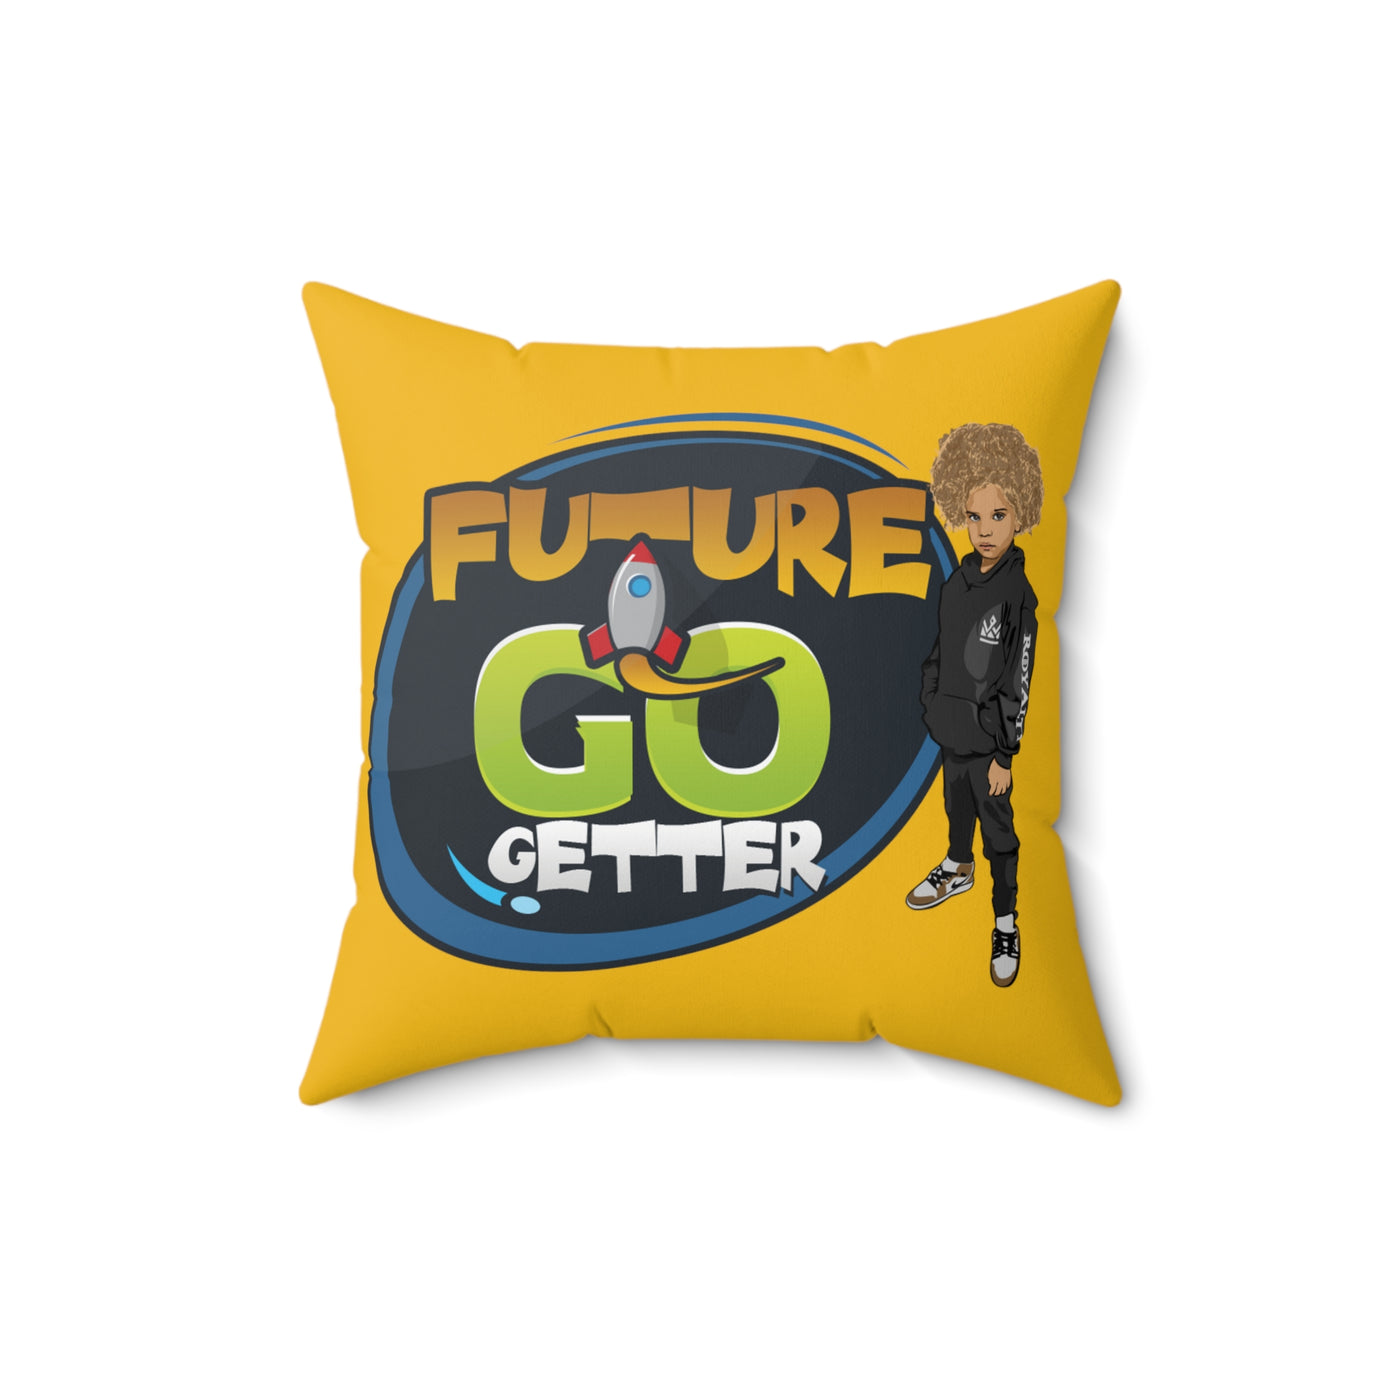 Future Go Getter Square Pillow